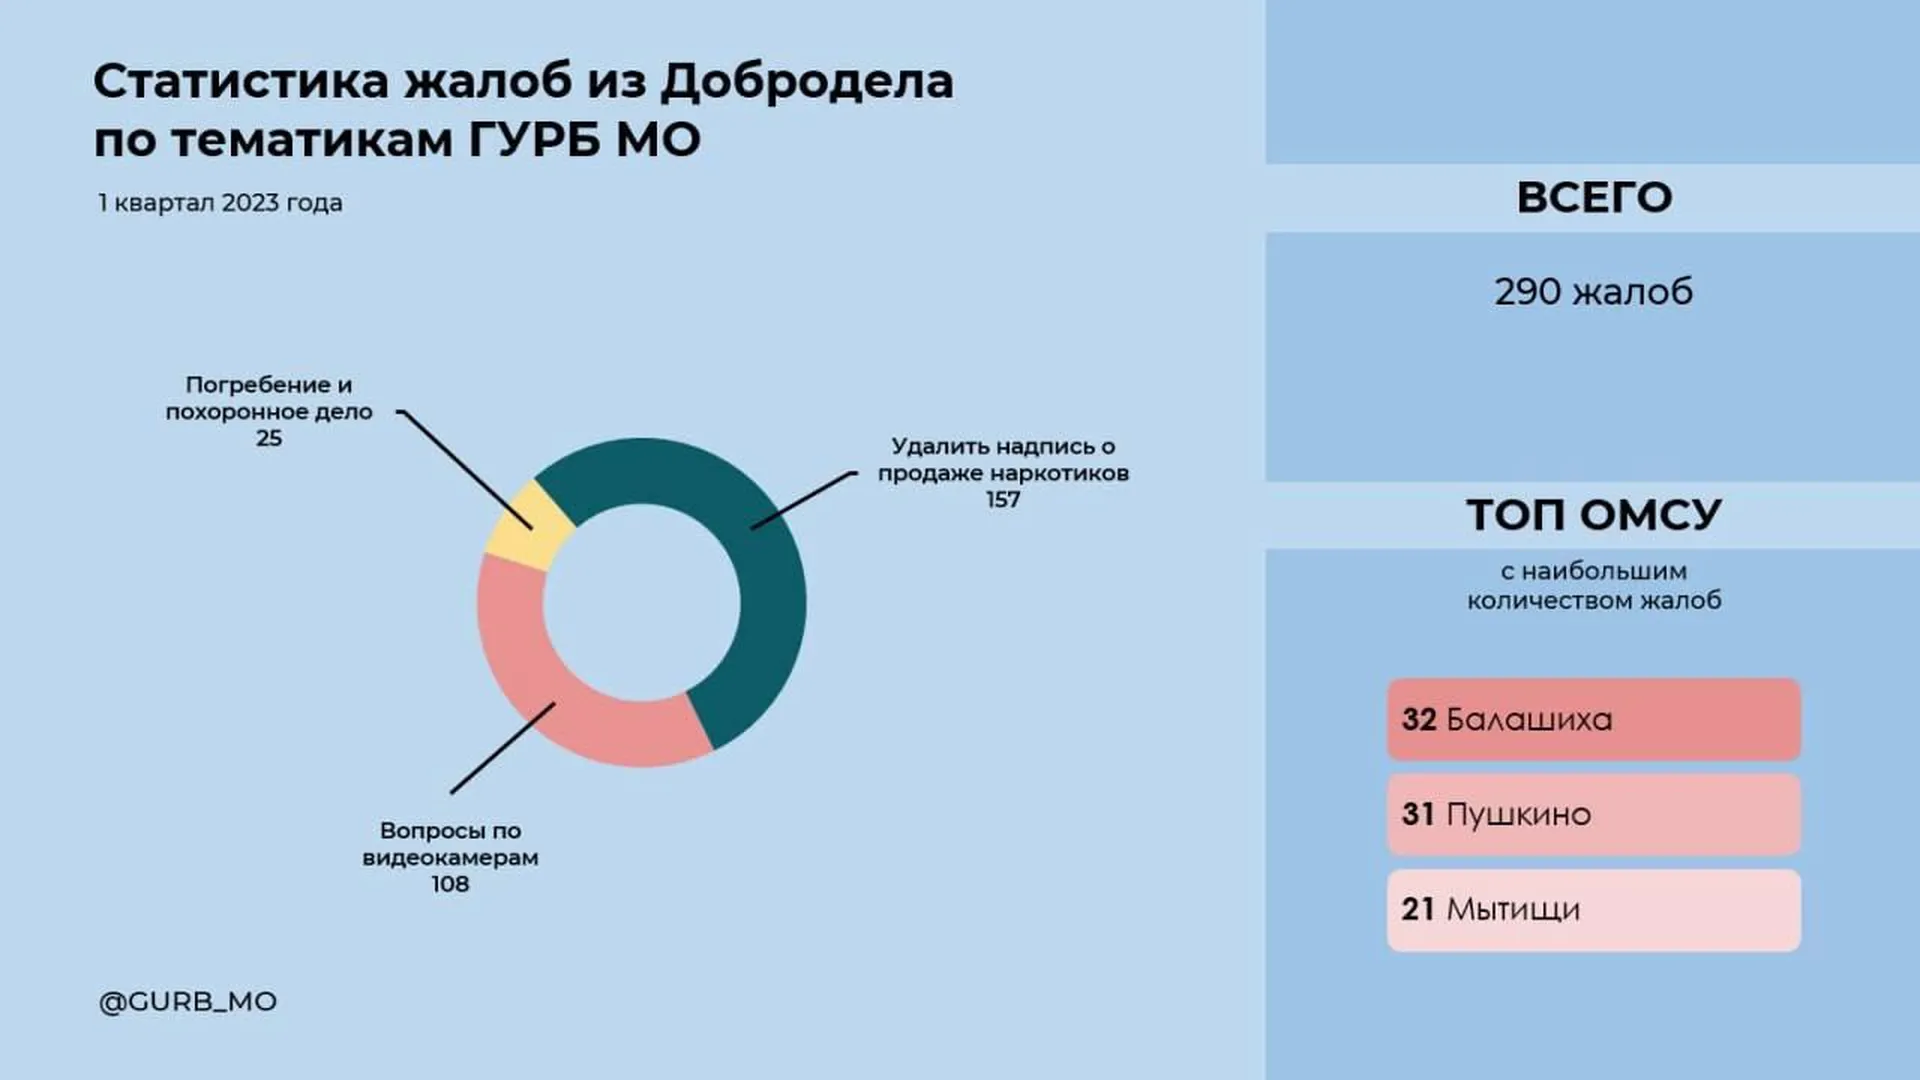 Жители Подмосковья направили почти 300 жалоб в ЦУР по вопросам безопасности за первый квартал 2023 года